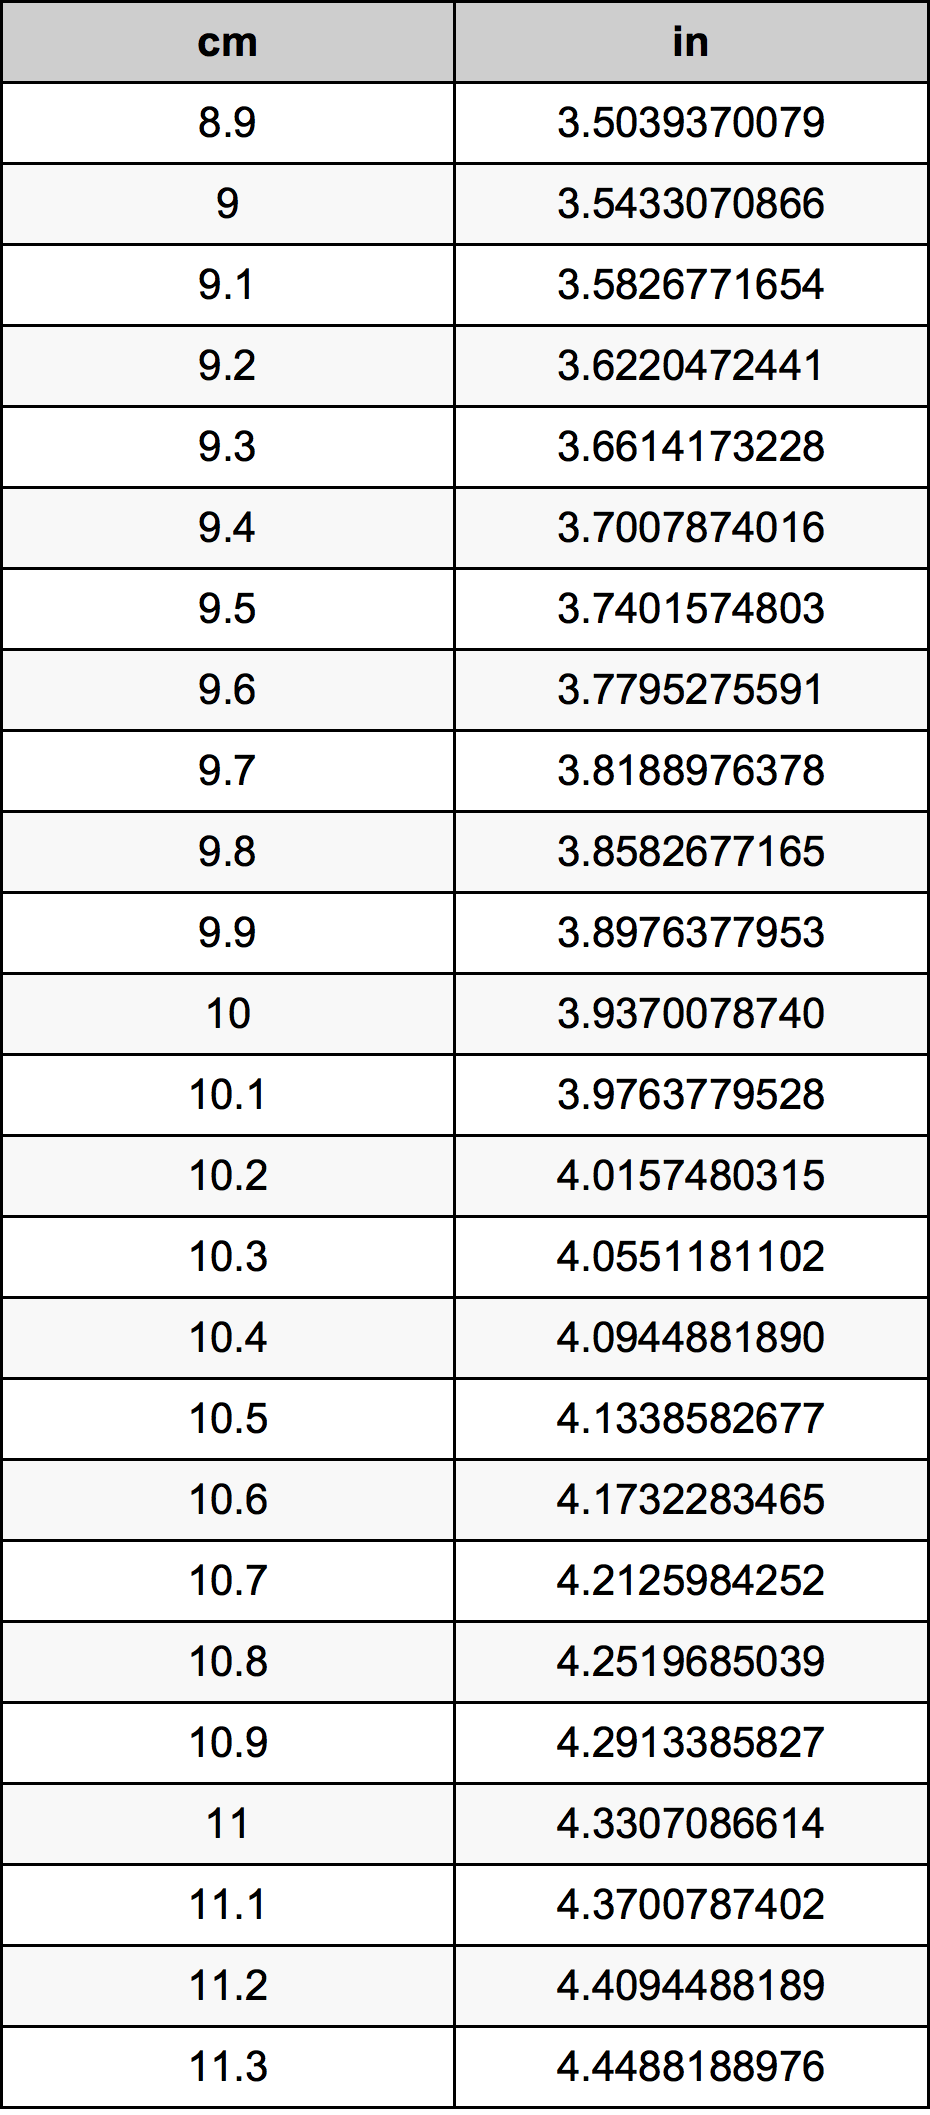 10.1 Centiméter átszámítási táblázat